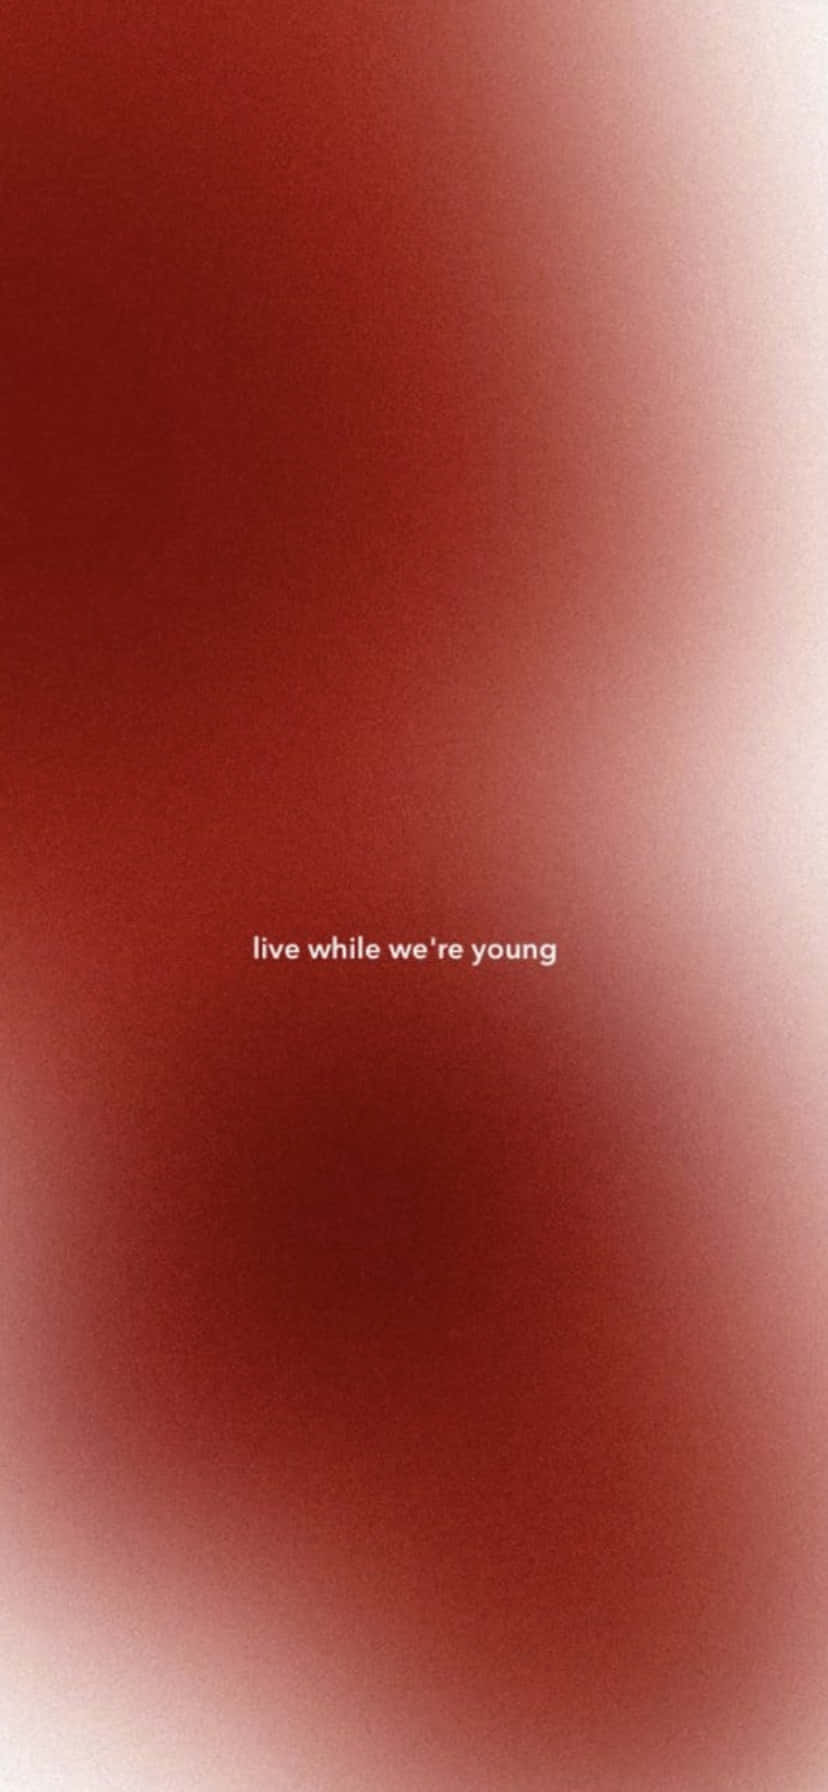 Vivaenquanto Somos Jovens. Fundo Vermelho Estético.